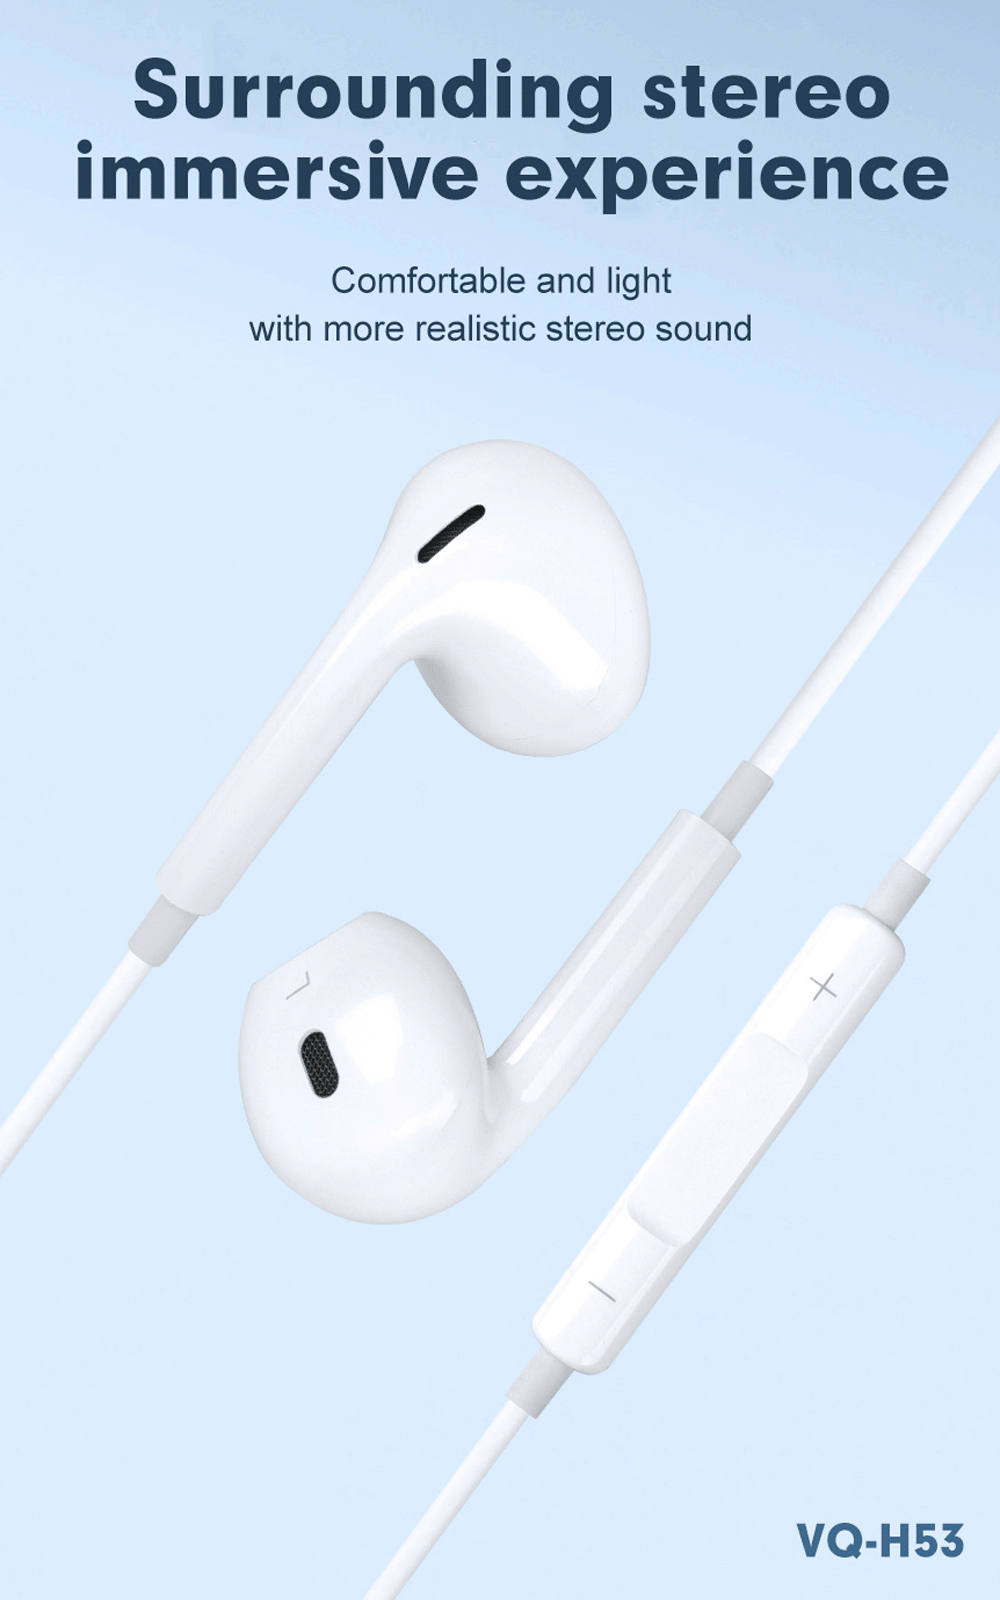 earphones | earphones with mic | earphones wired